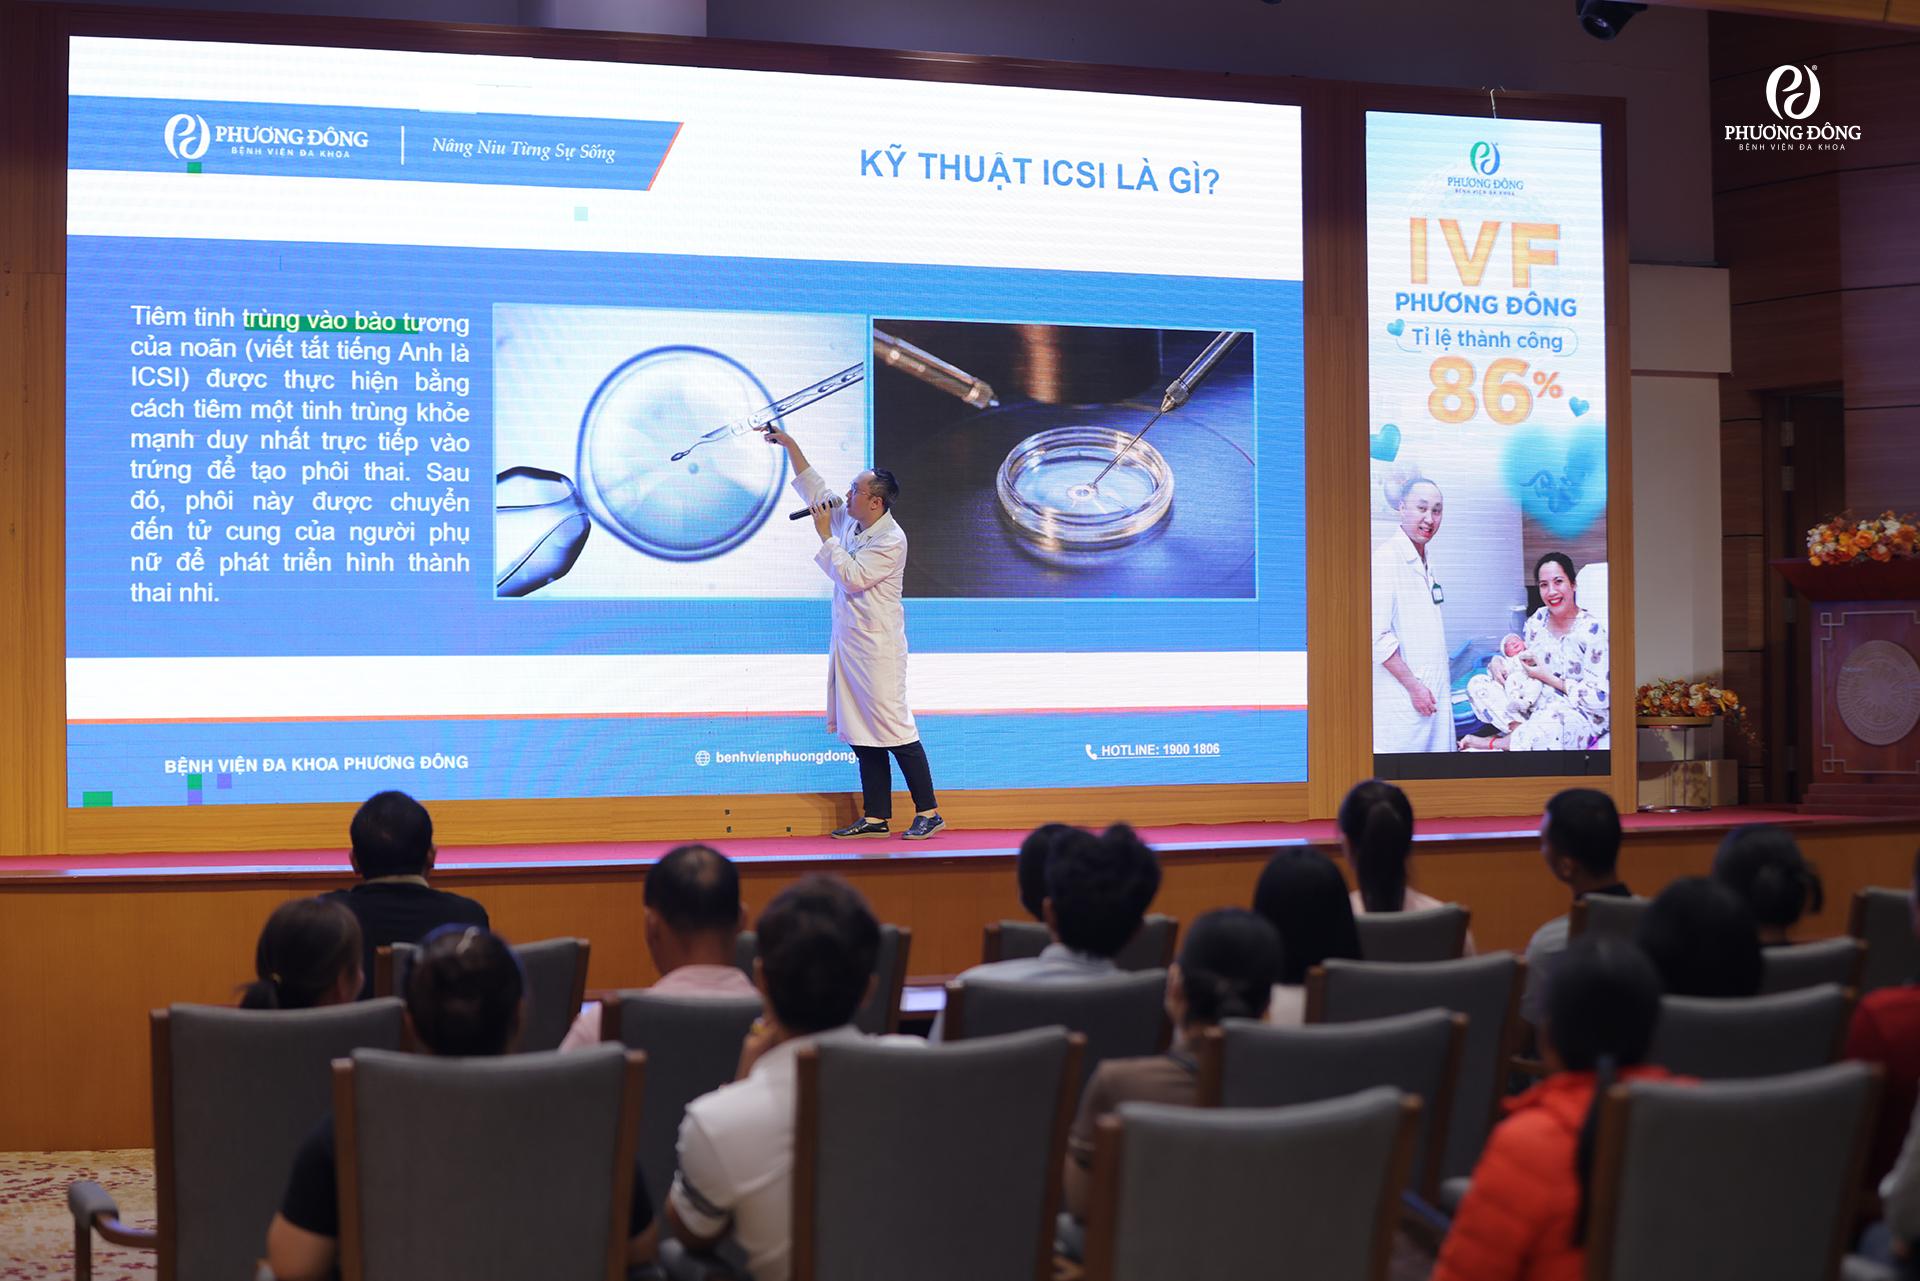 Cơ hội hỏi đáp trực tiếp với chuyên gia tại các sự kiện của IVF Phương Đông.